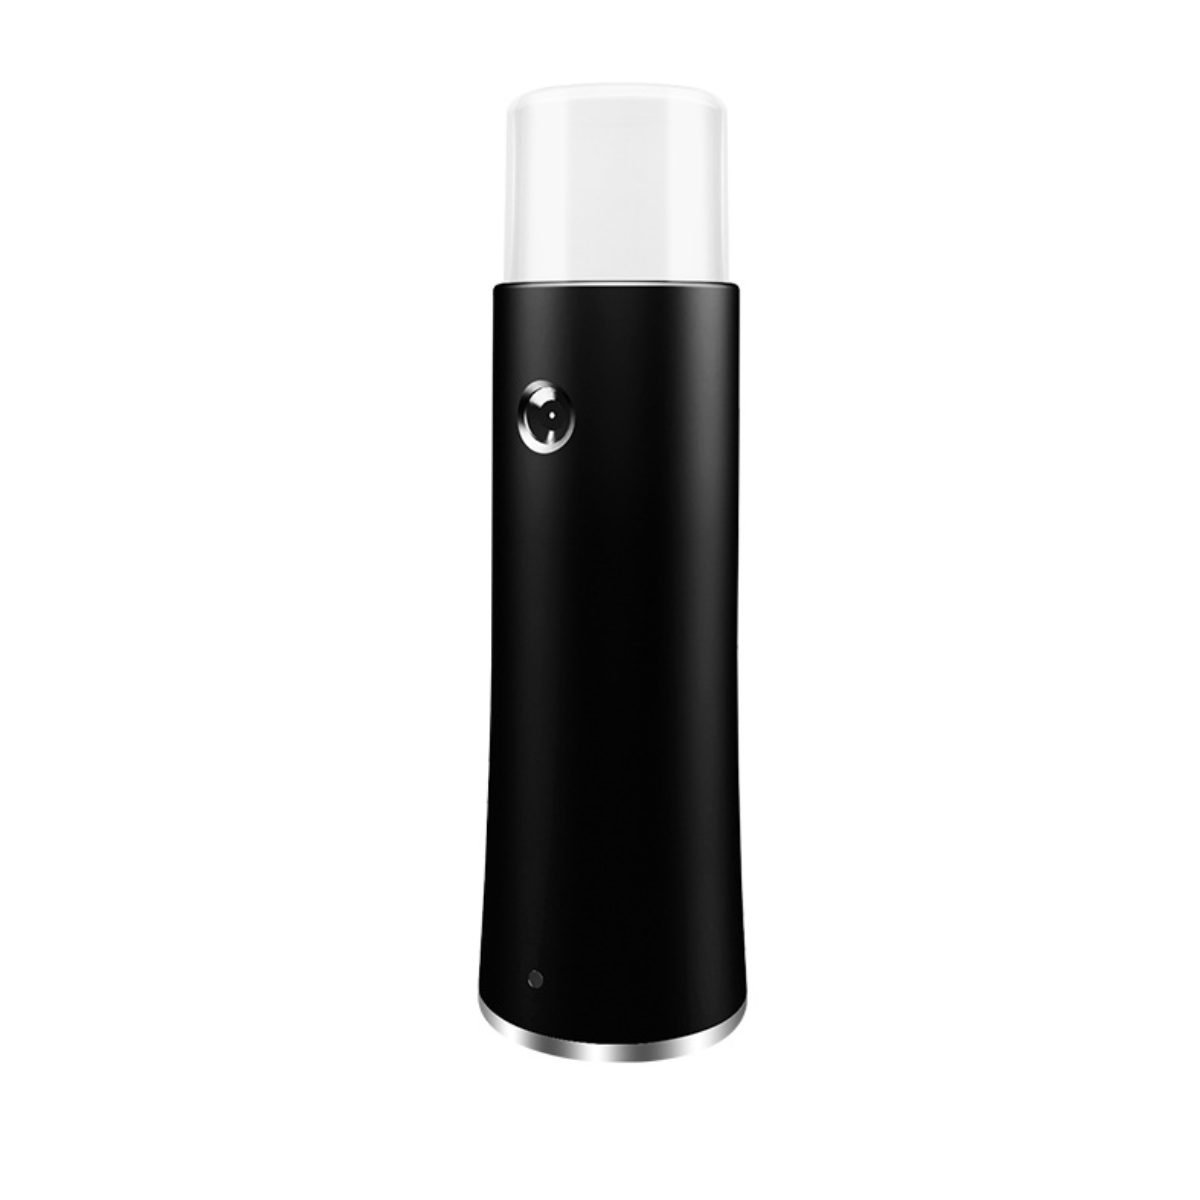 UWOT Feuchtigkeitsgerät 20 ml: Schwarz Aufhellend, Hochdruckspray Und Ein-Knopf-Bedienung, Feuchtigkeitsspendend Anti-Aging Gesichtspflege